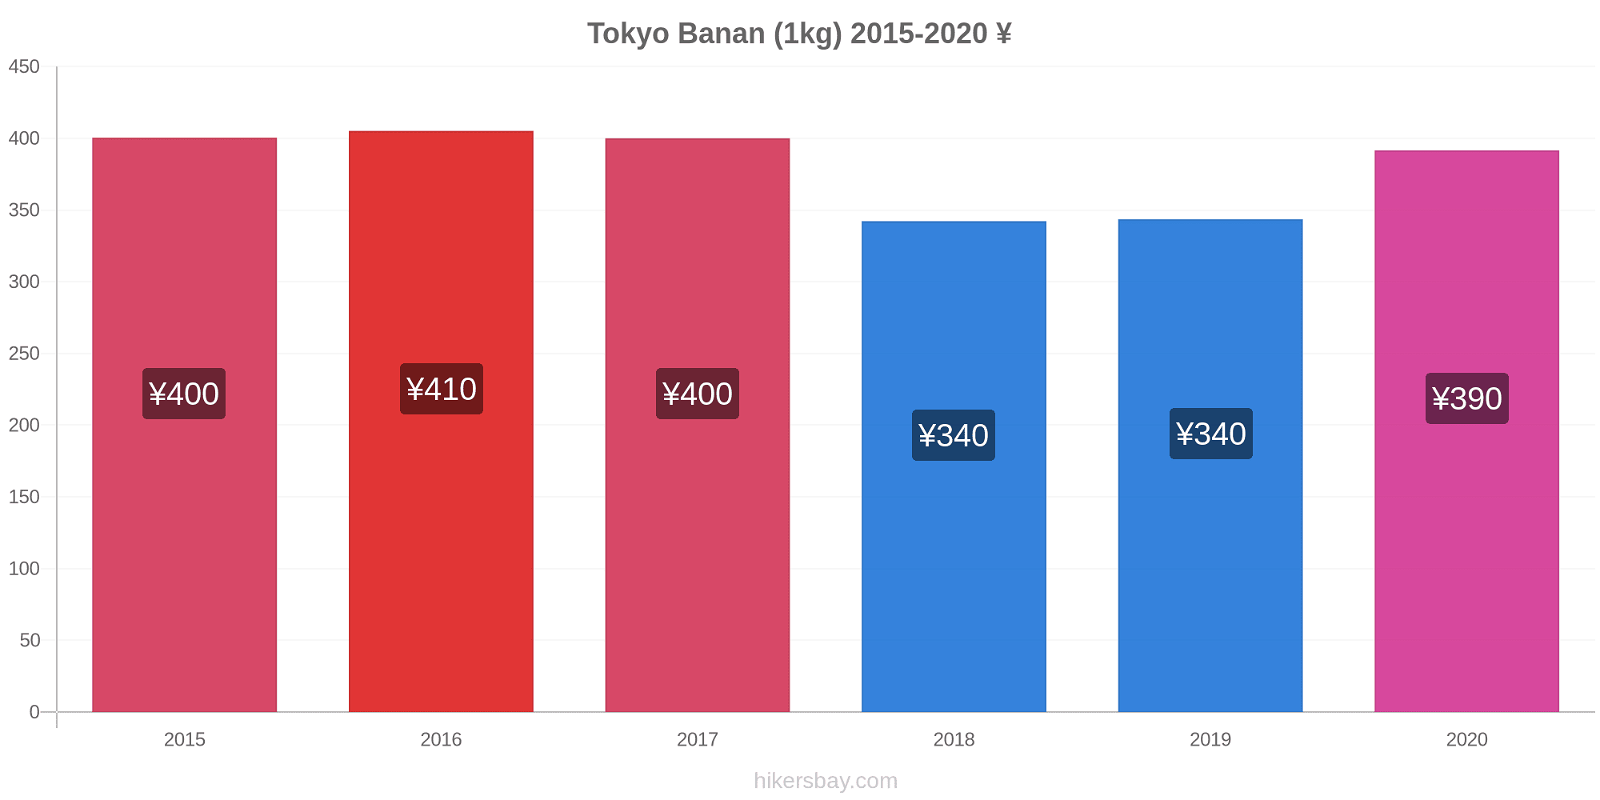 Tokyo prisændringer Banan (1kg) hikersbay.com